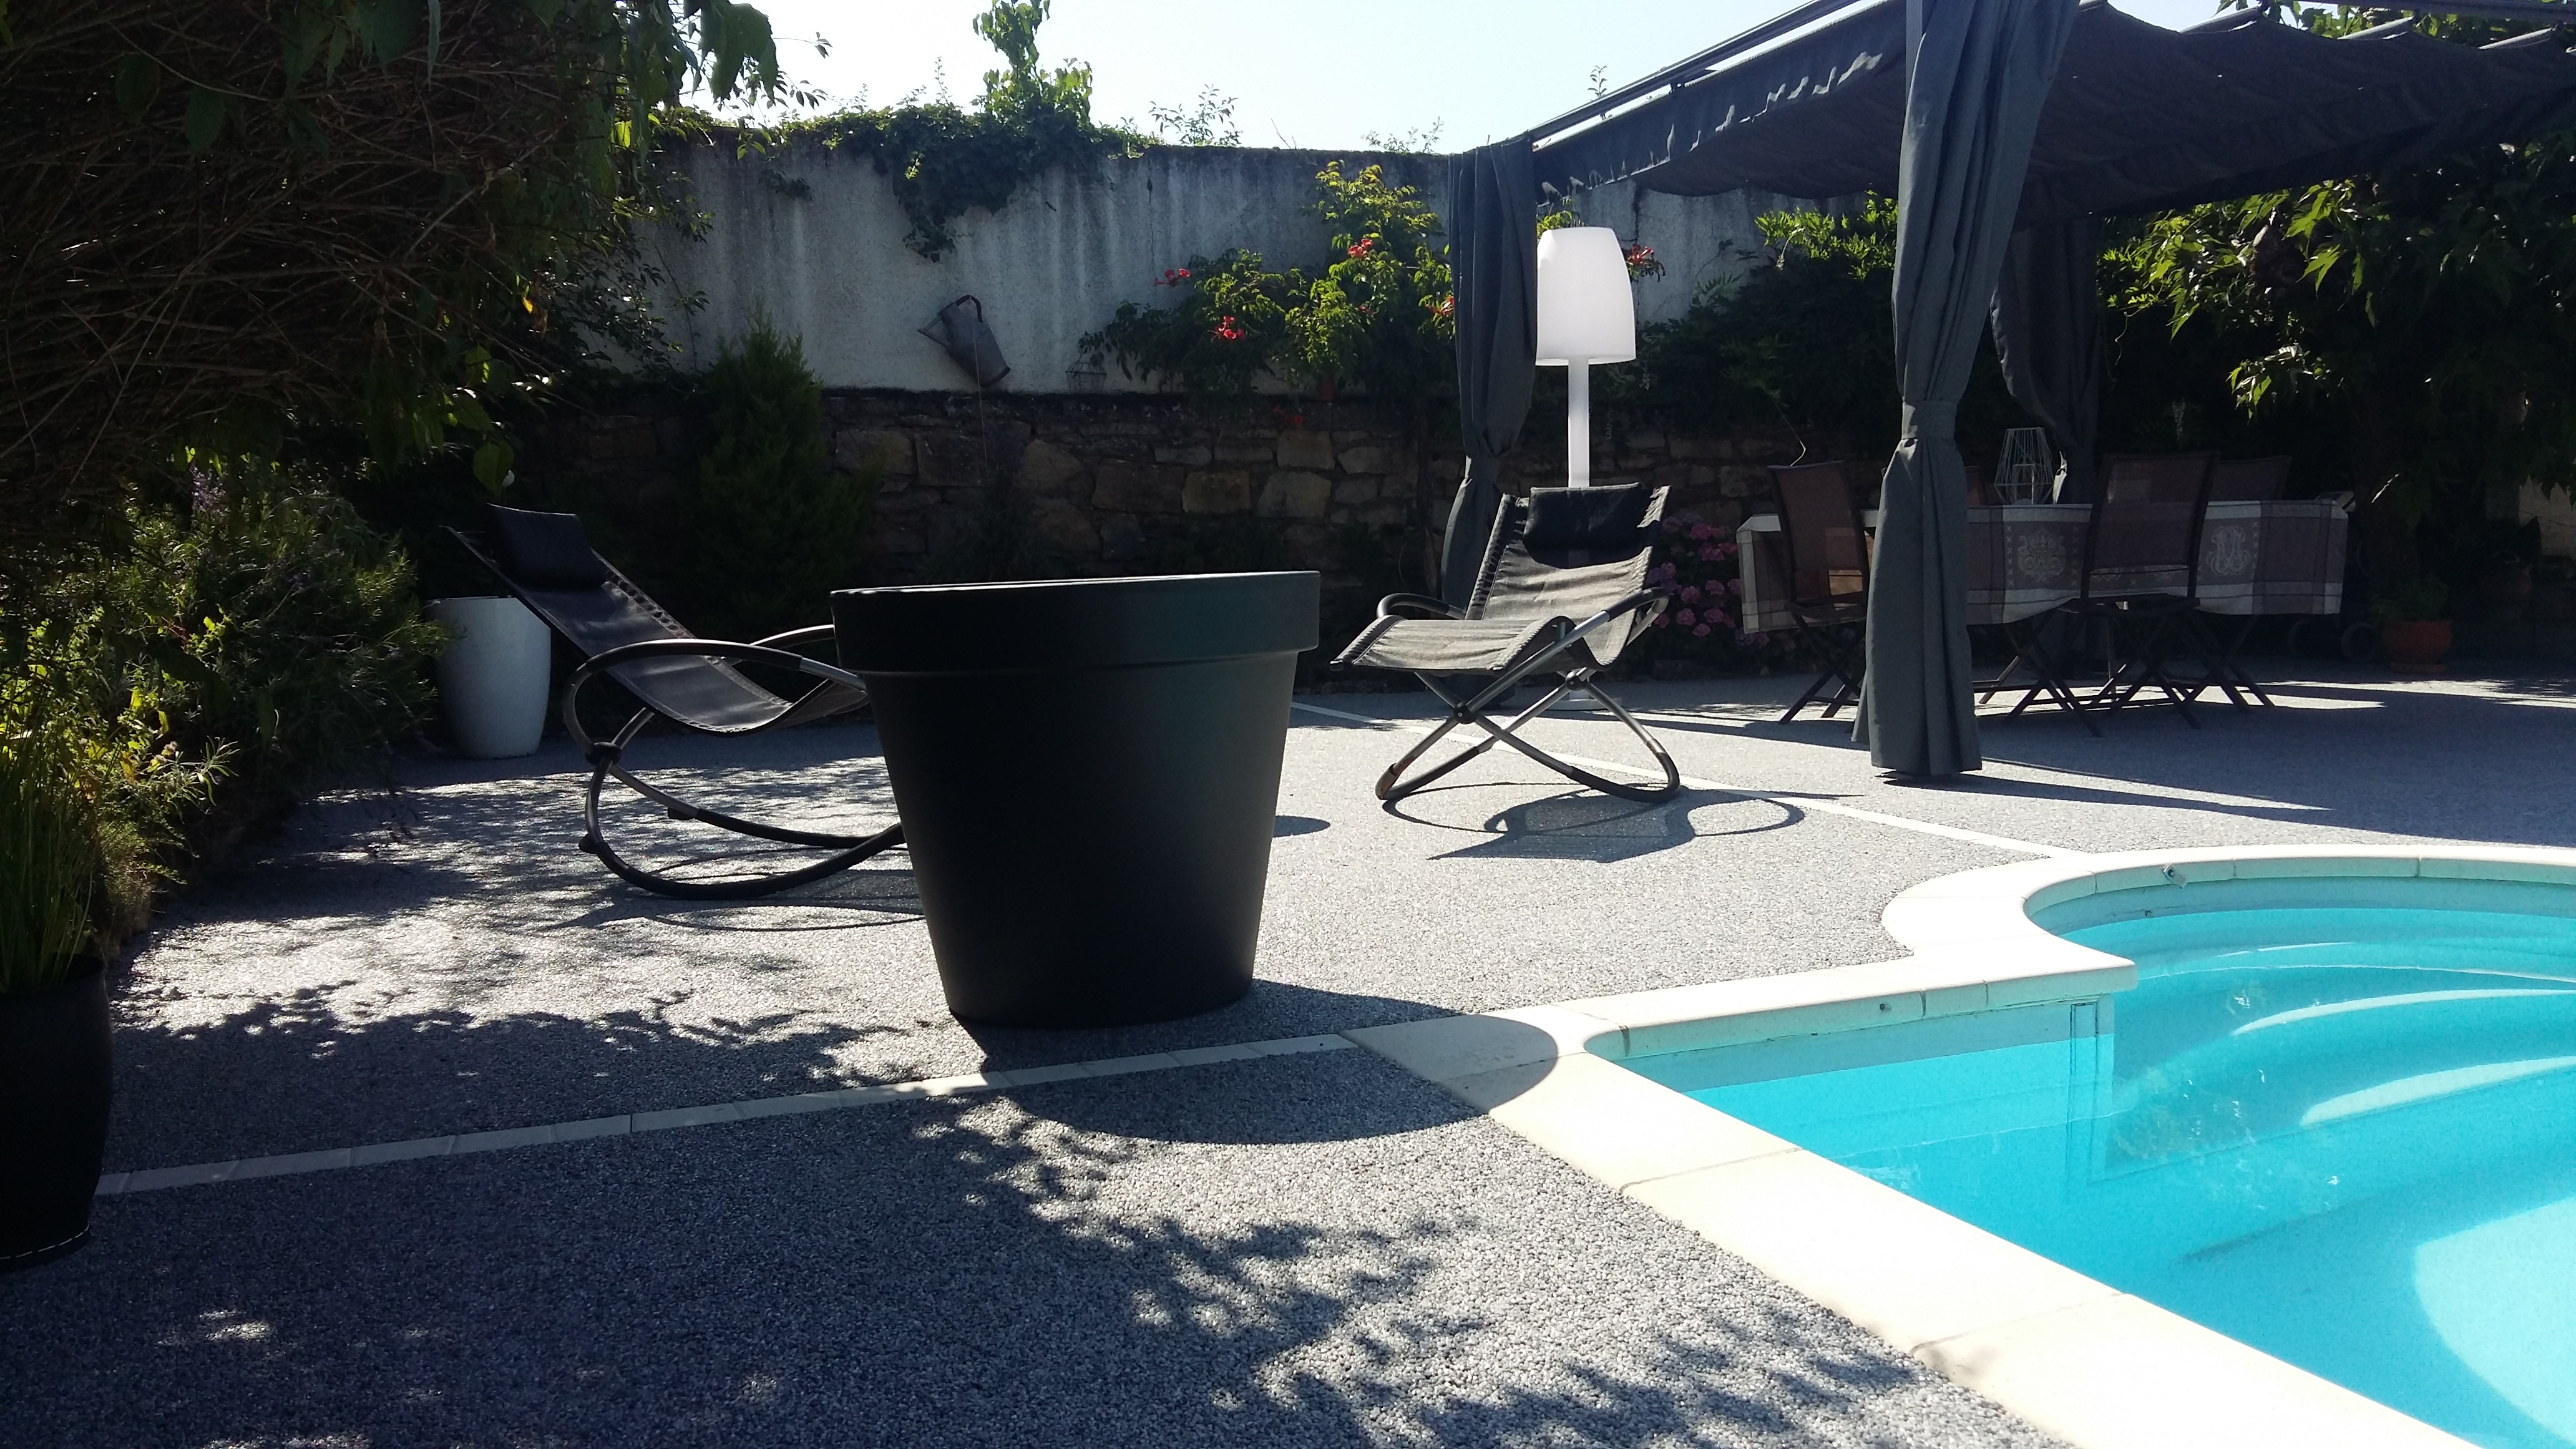 Ralisation Plage de piscine en Hydrostar - Entreprise Chierici - Aveyron conue le 12/09/2018